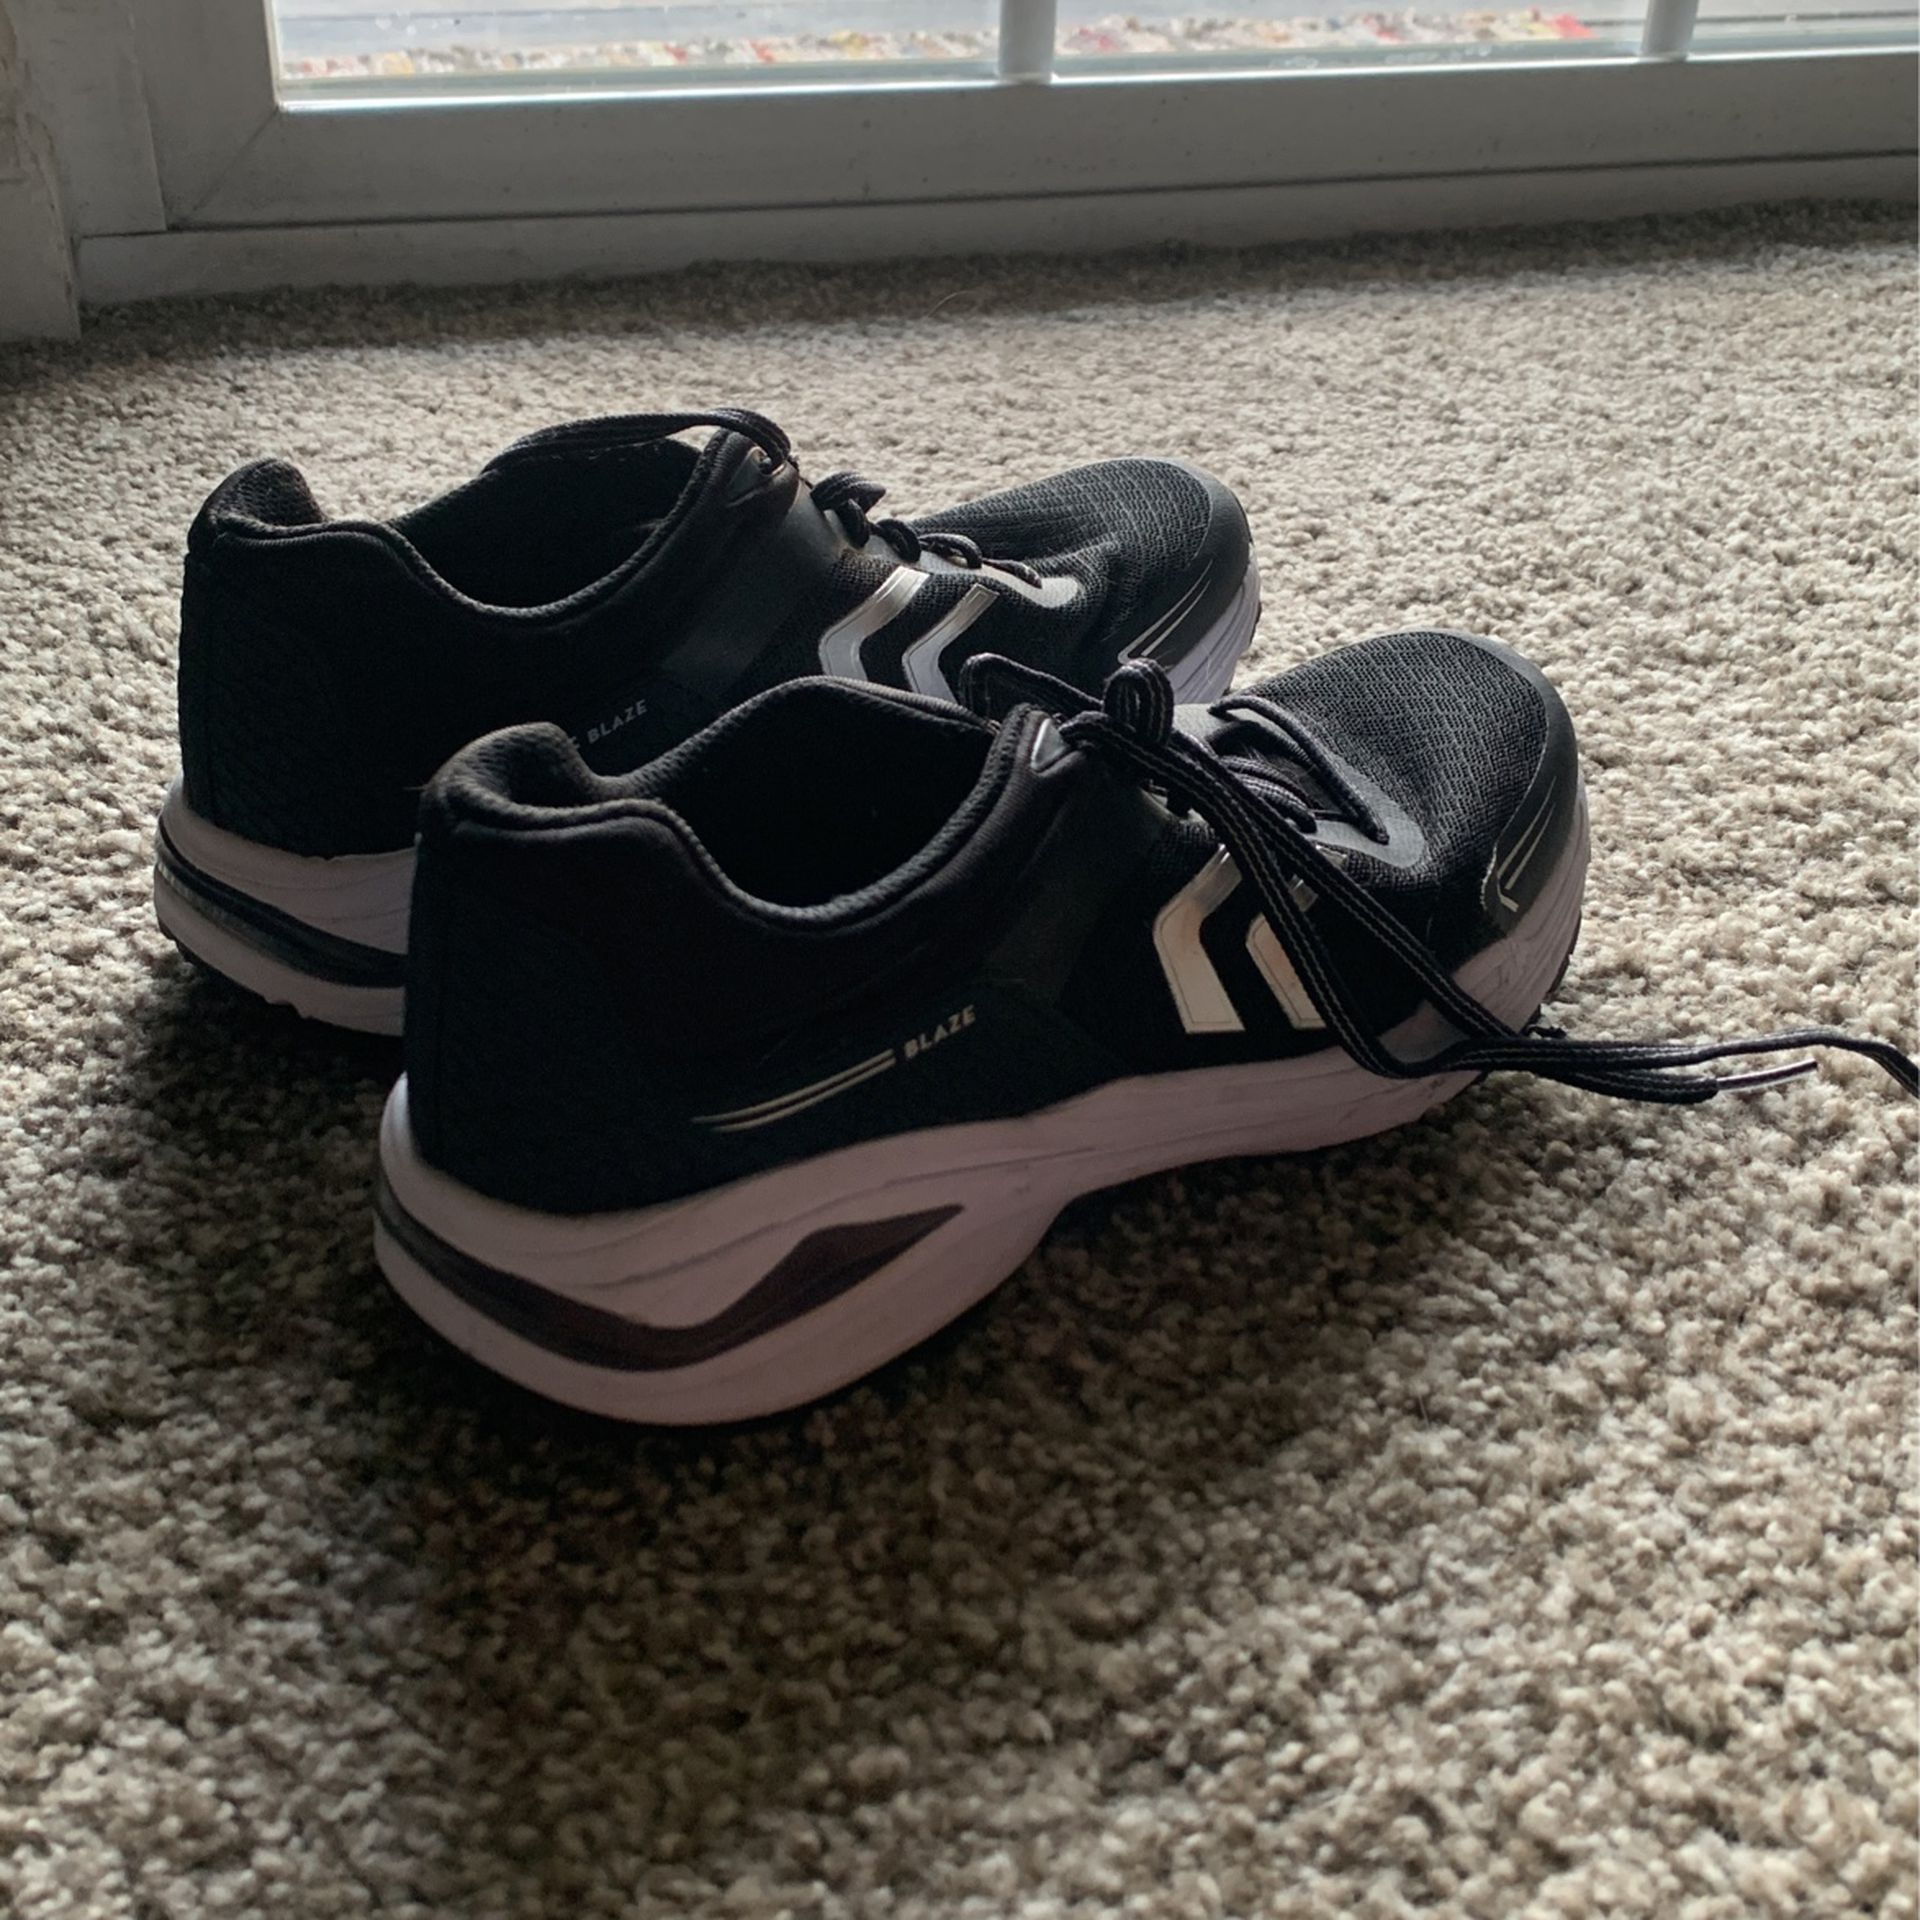 Dr. Scholl’s Tennis Shoes Women Size 7.5